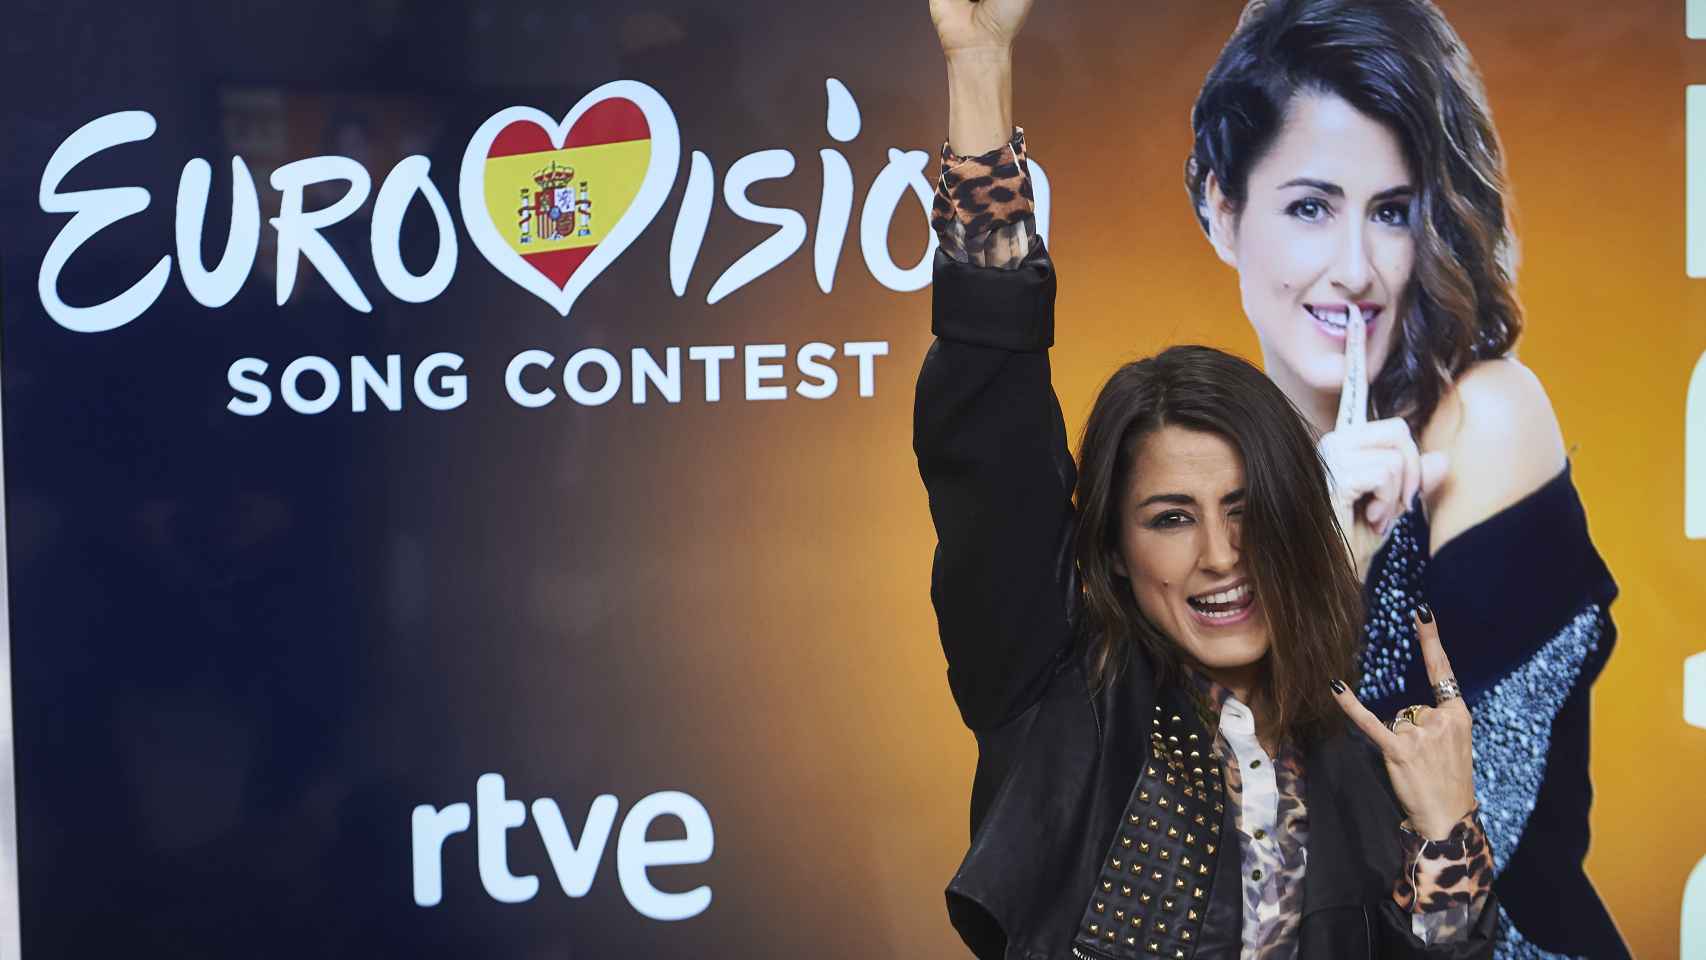 Barei, representante española en Eurovisión